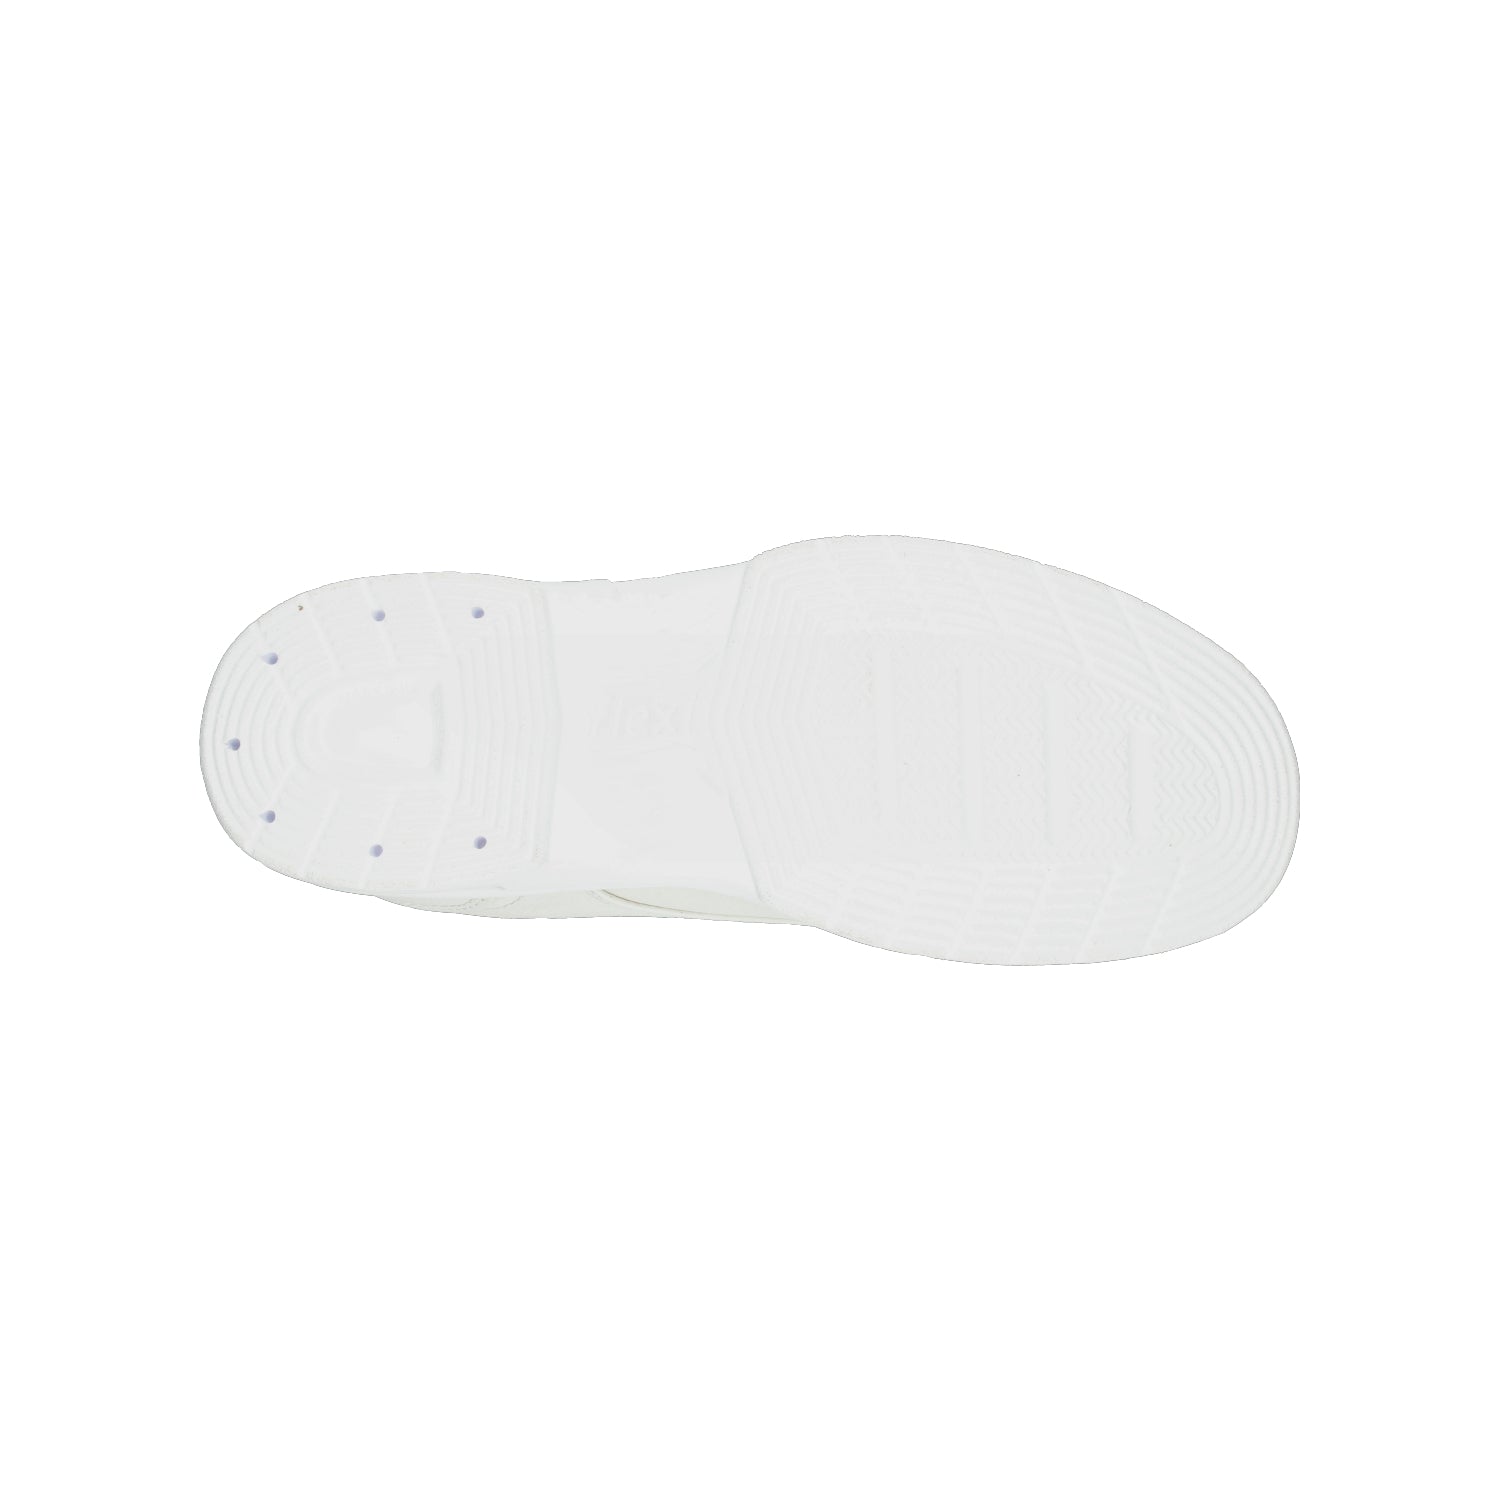 Zapato de Servicio Flexi Blanco para Hombre [FFF3123] - Zapaterias Torreon